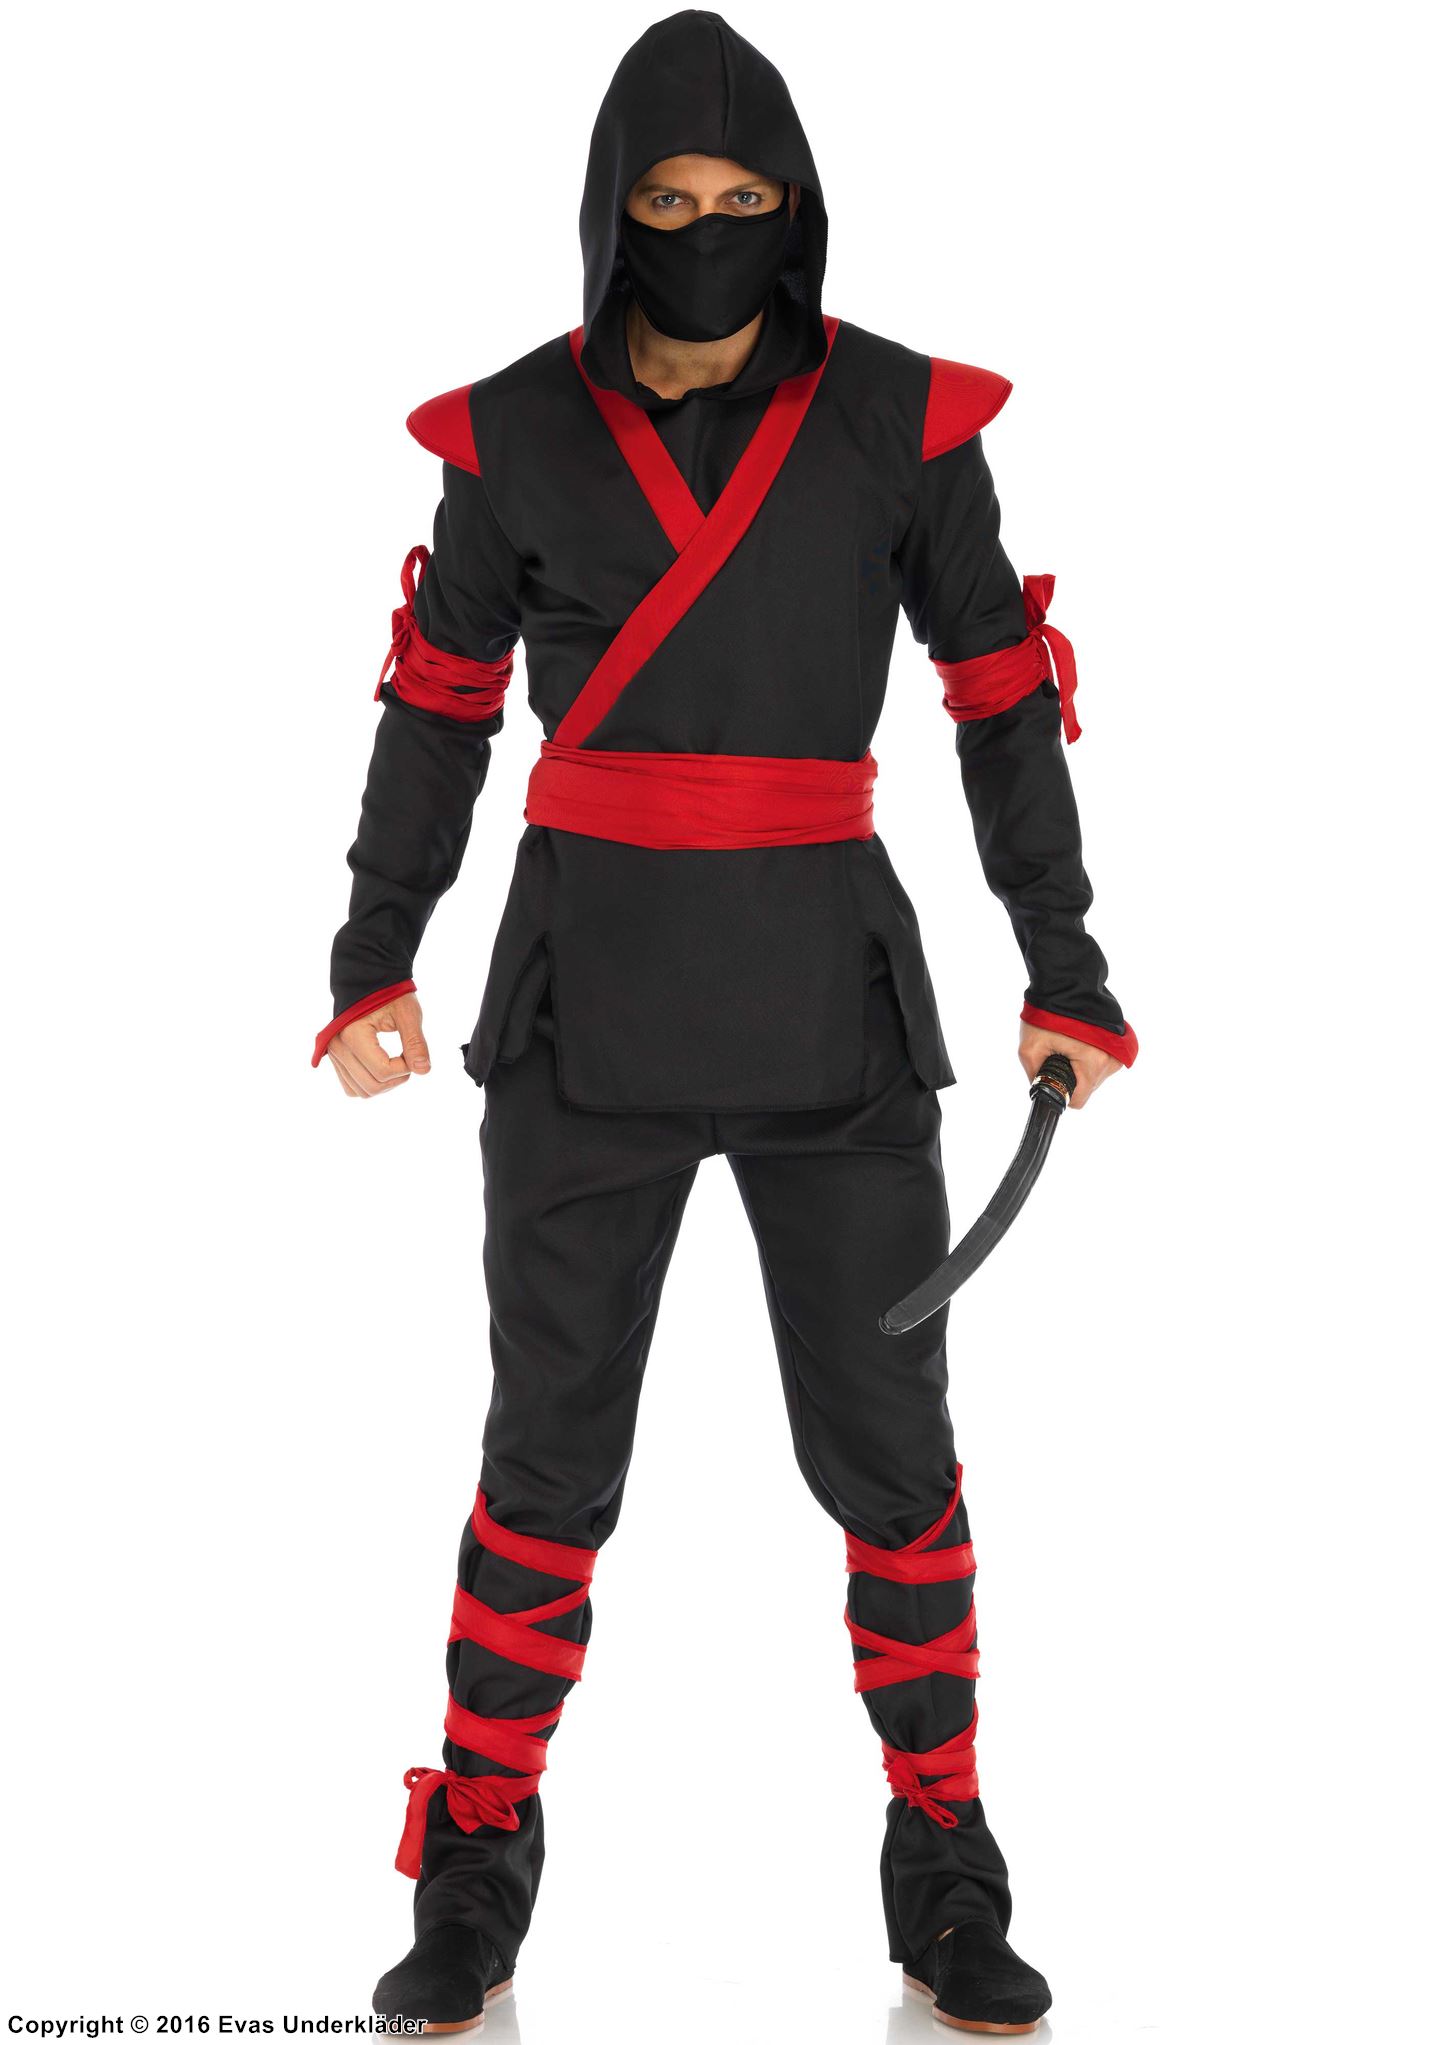 Ninja, costume top and pants, hood